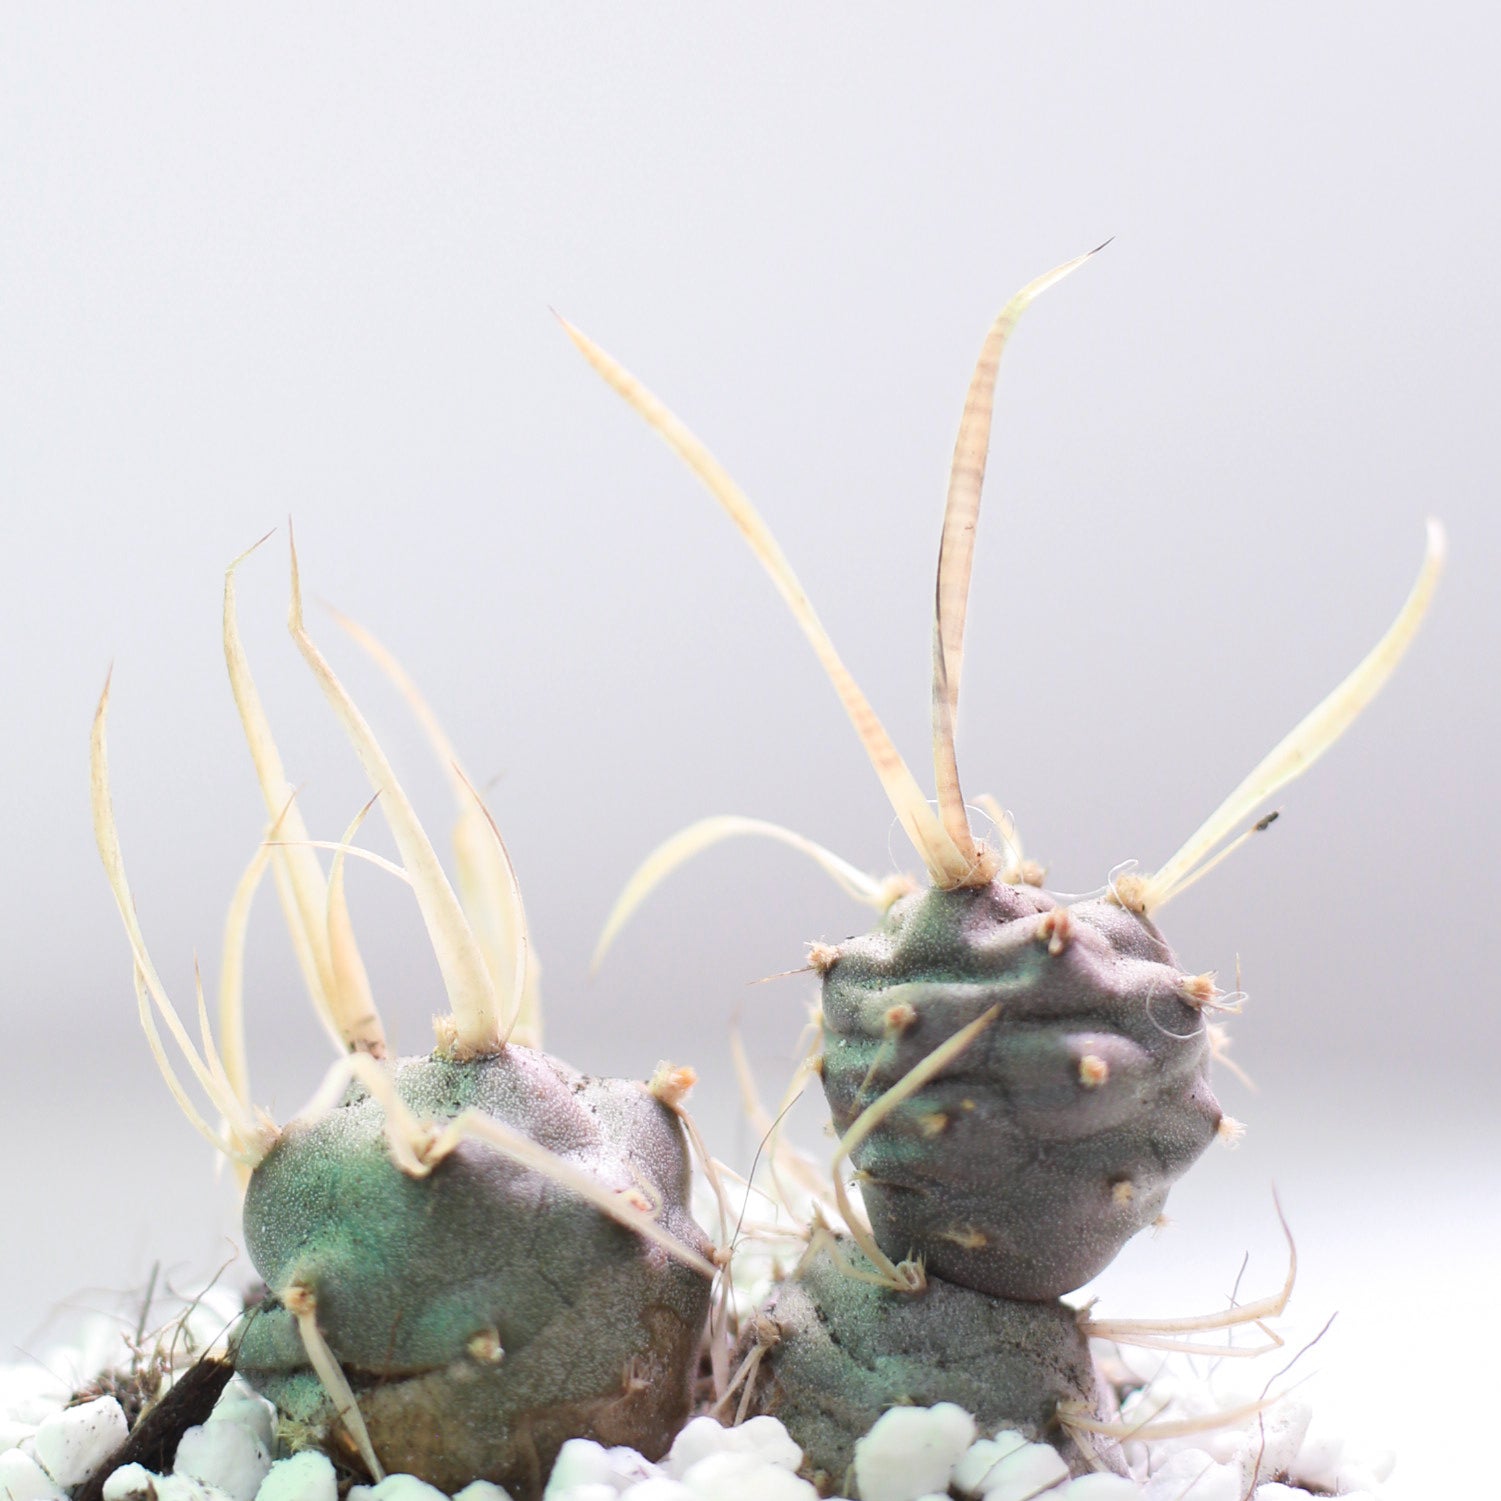 Paper Spine Cactus Tephrocactus, rare cactus, unique cactus for sale, buy cacti online